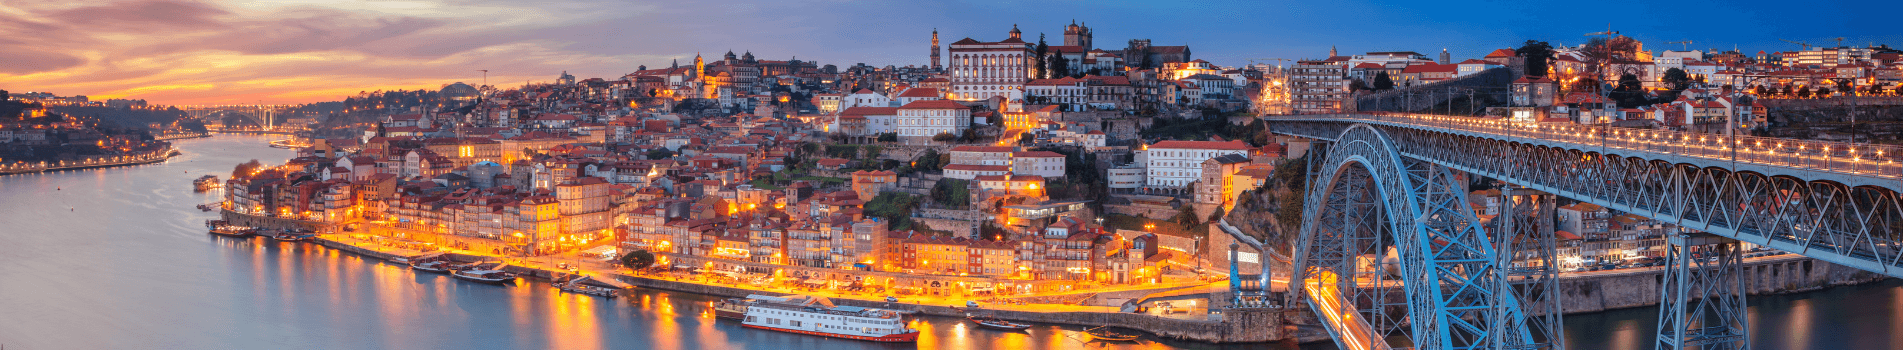 6 המקומות המומלצים לבקר בהם בפורטוגל